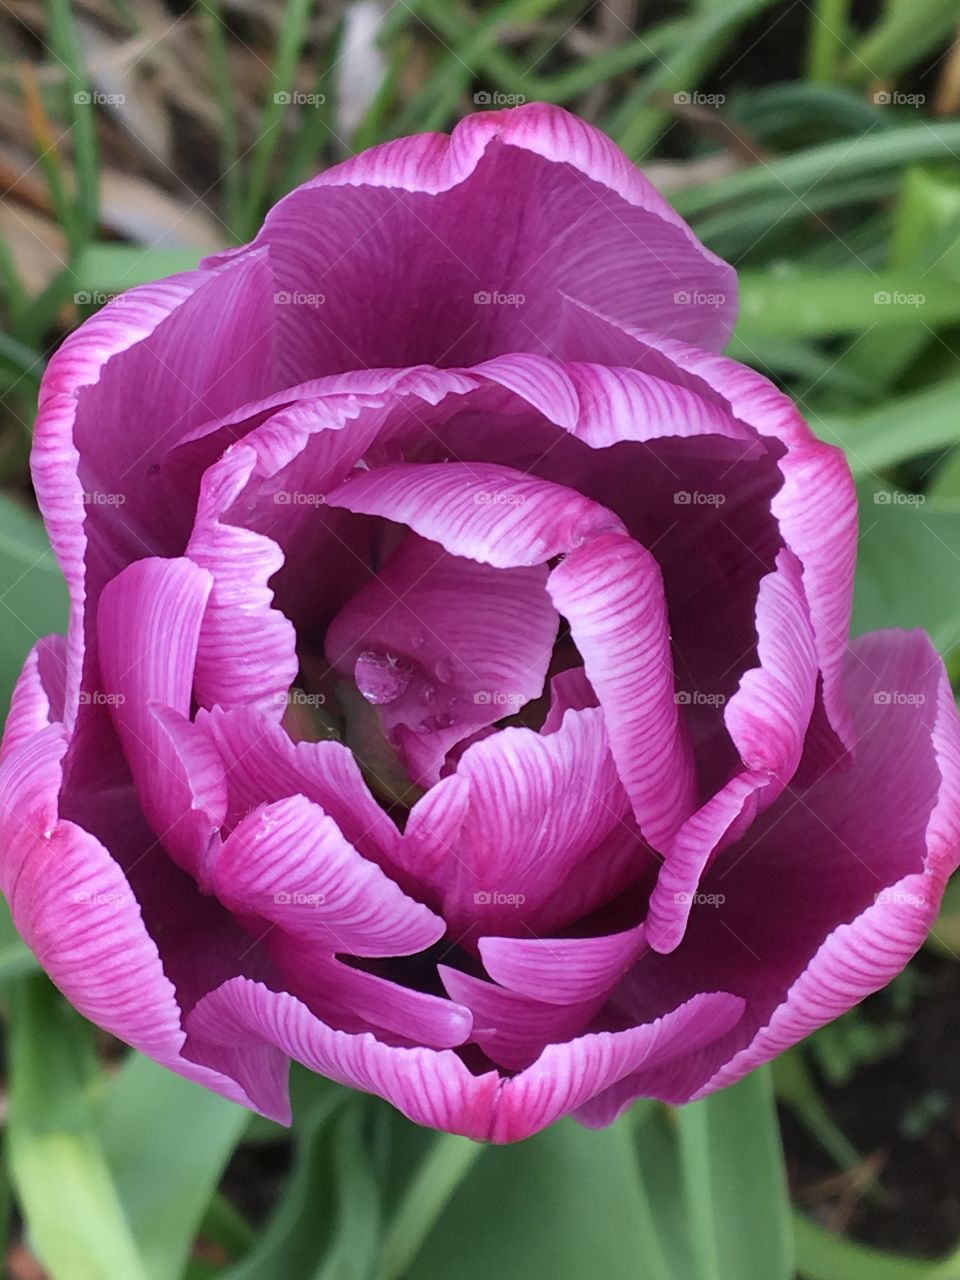 Fancy pink tulip face with rain drop Jewel